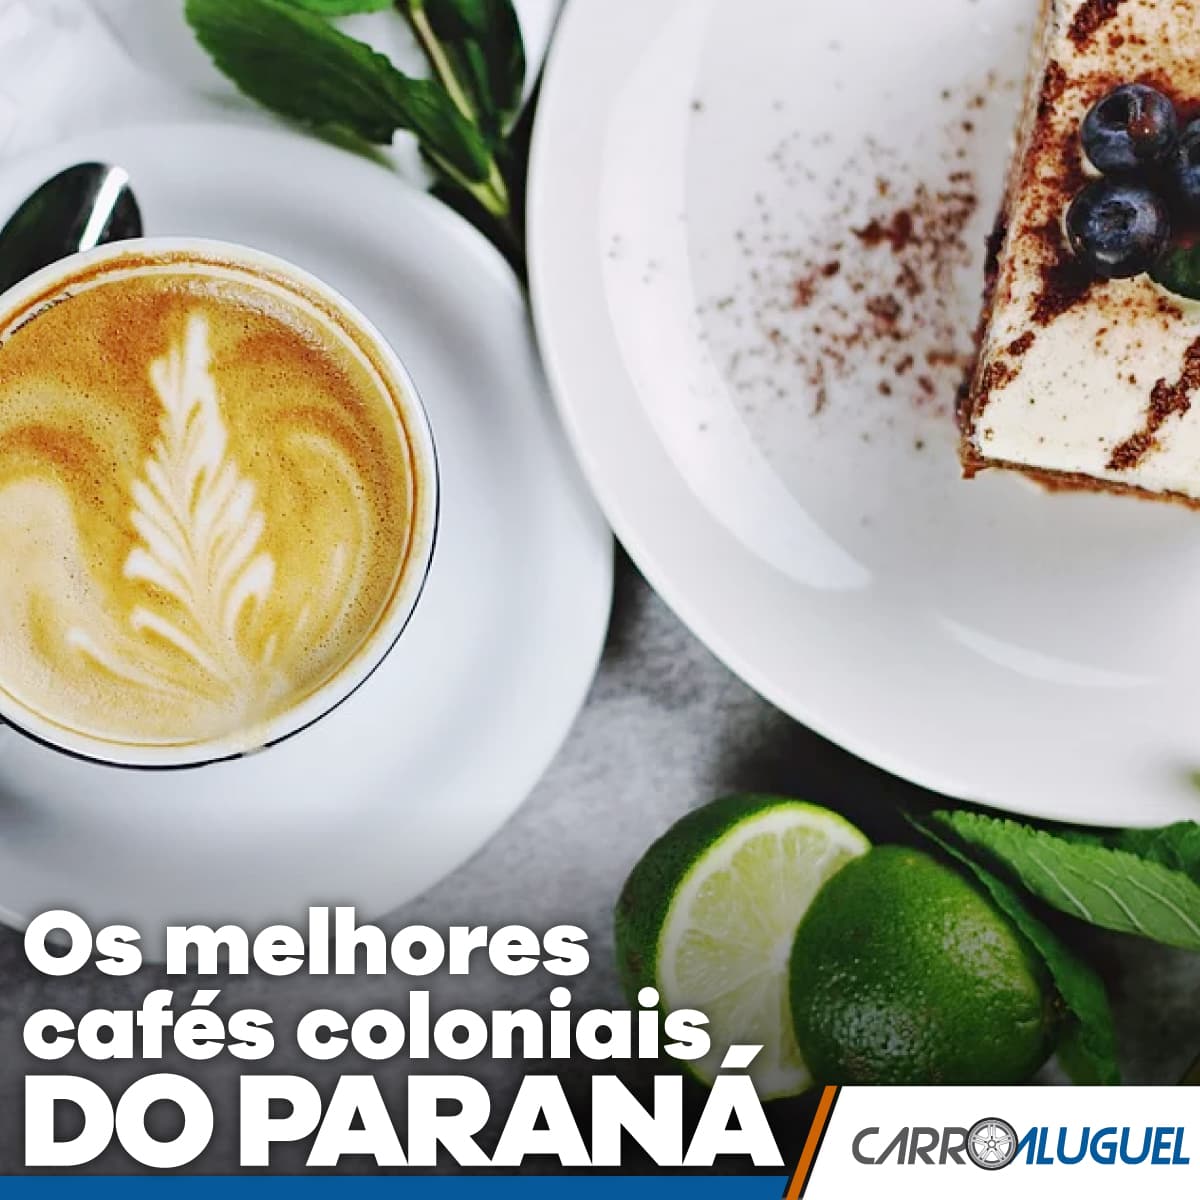 Imagem de um prato com café e pedaço de torta com o título: Os melhores cafés coloniais do Paraná